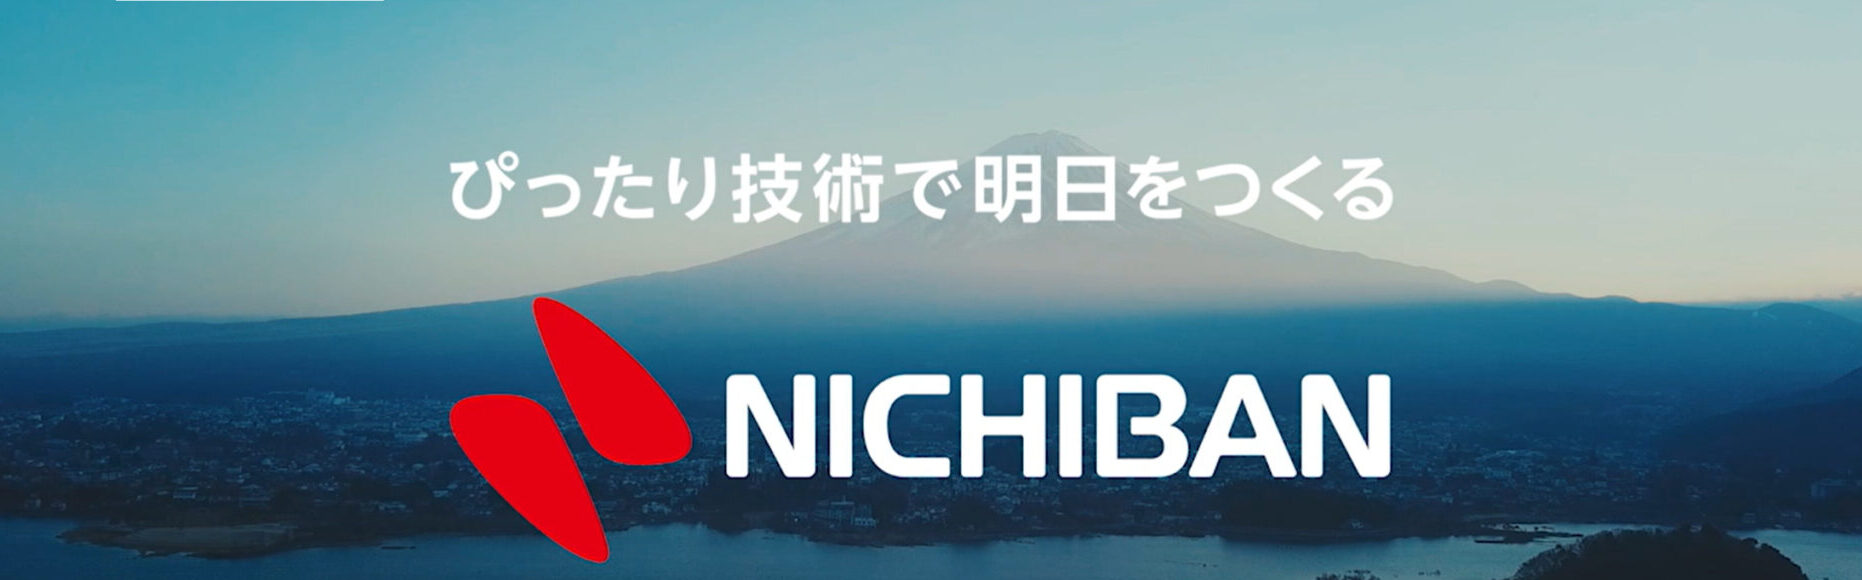 ニチバン株式会社の画像